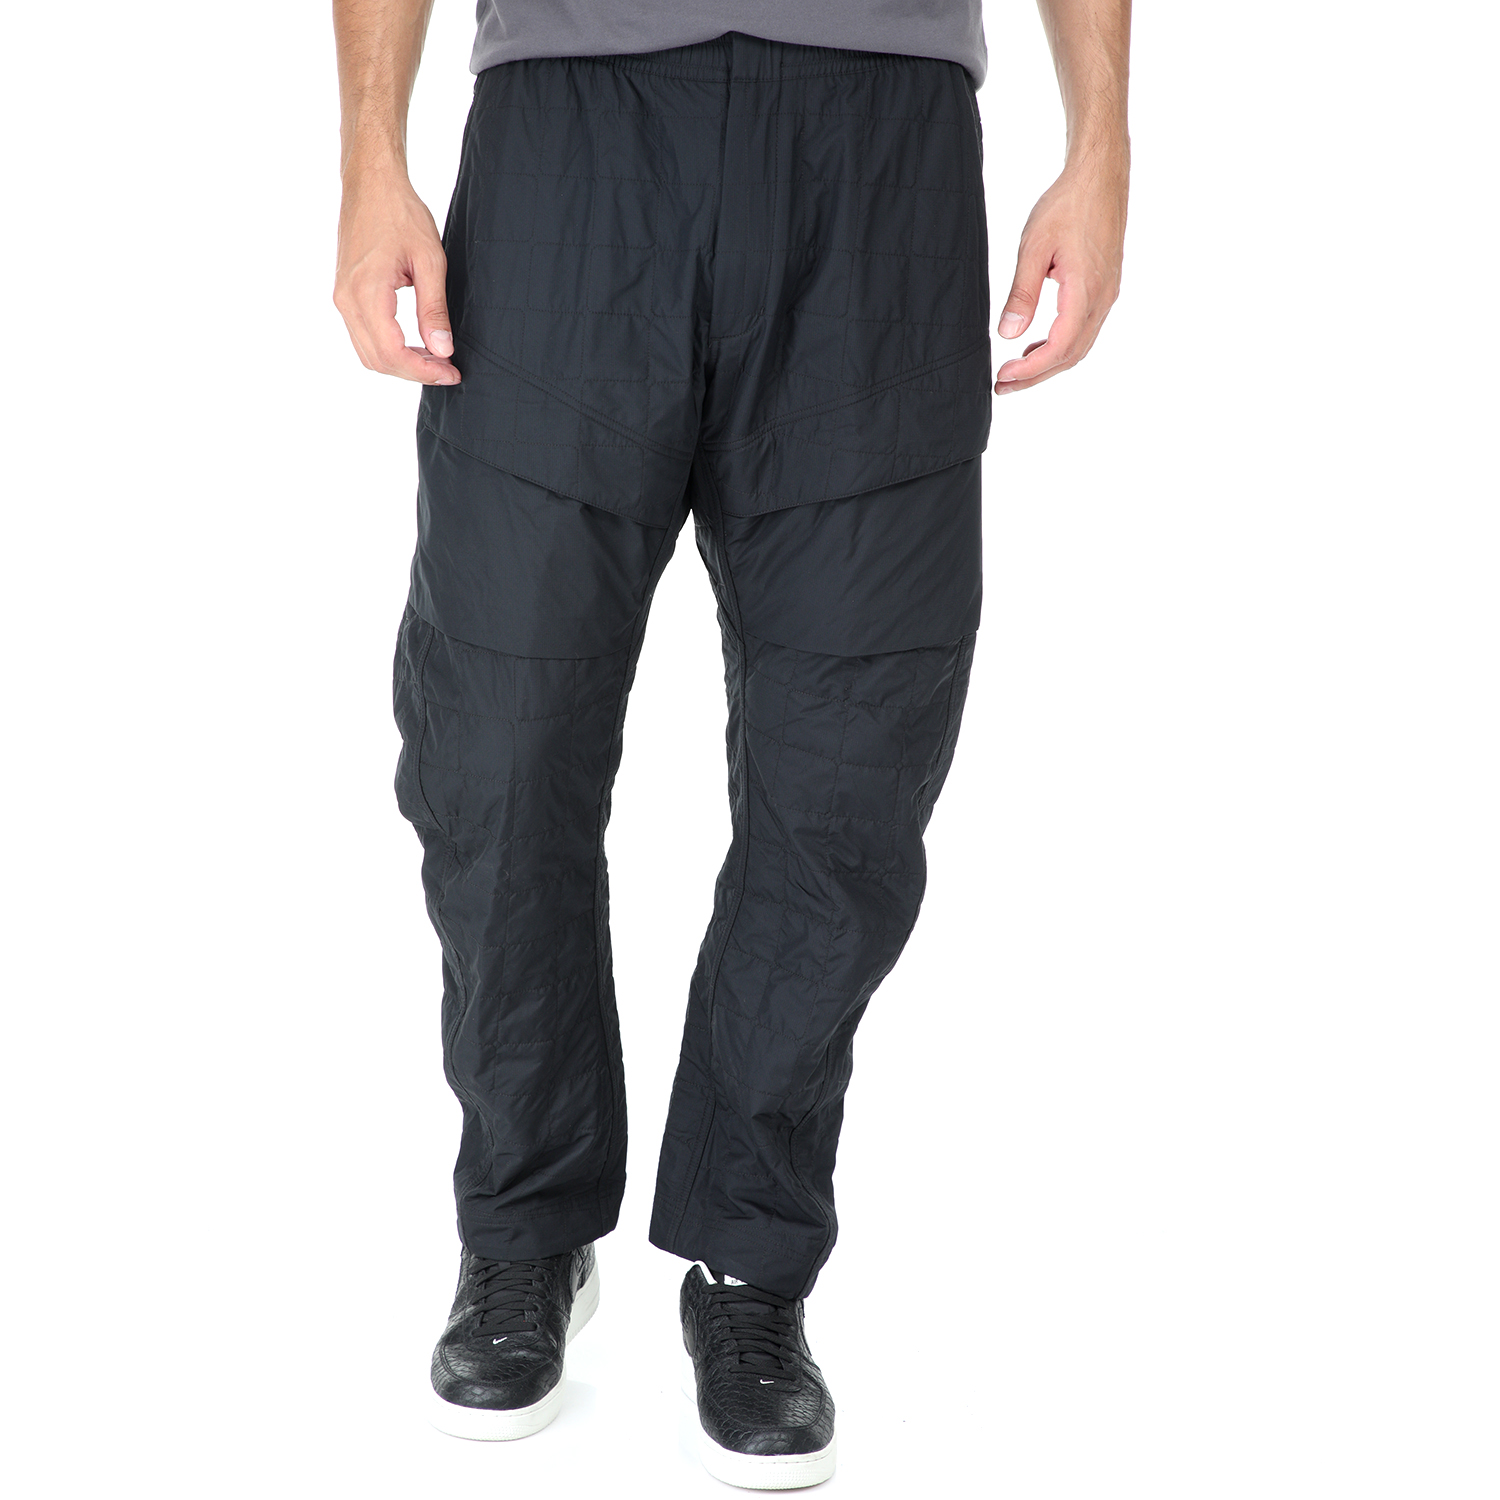 Ανδρικά/Ρούχα/Αθλητικά/Φόρμες NIKE - Ανδρικό παντελόνι φόρμας NIKE NSW TCH PCK PANT WVN QLTD μαύρο